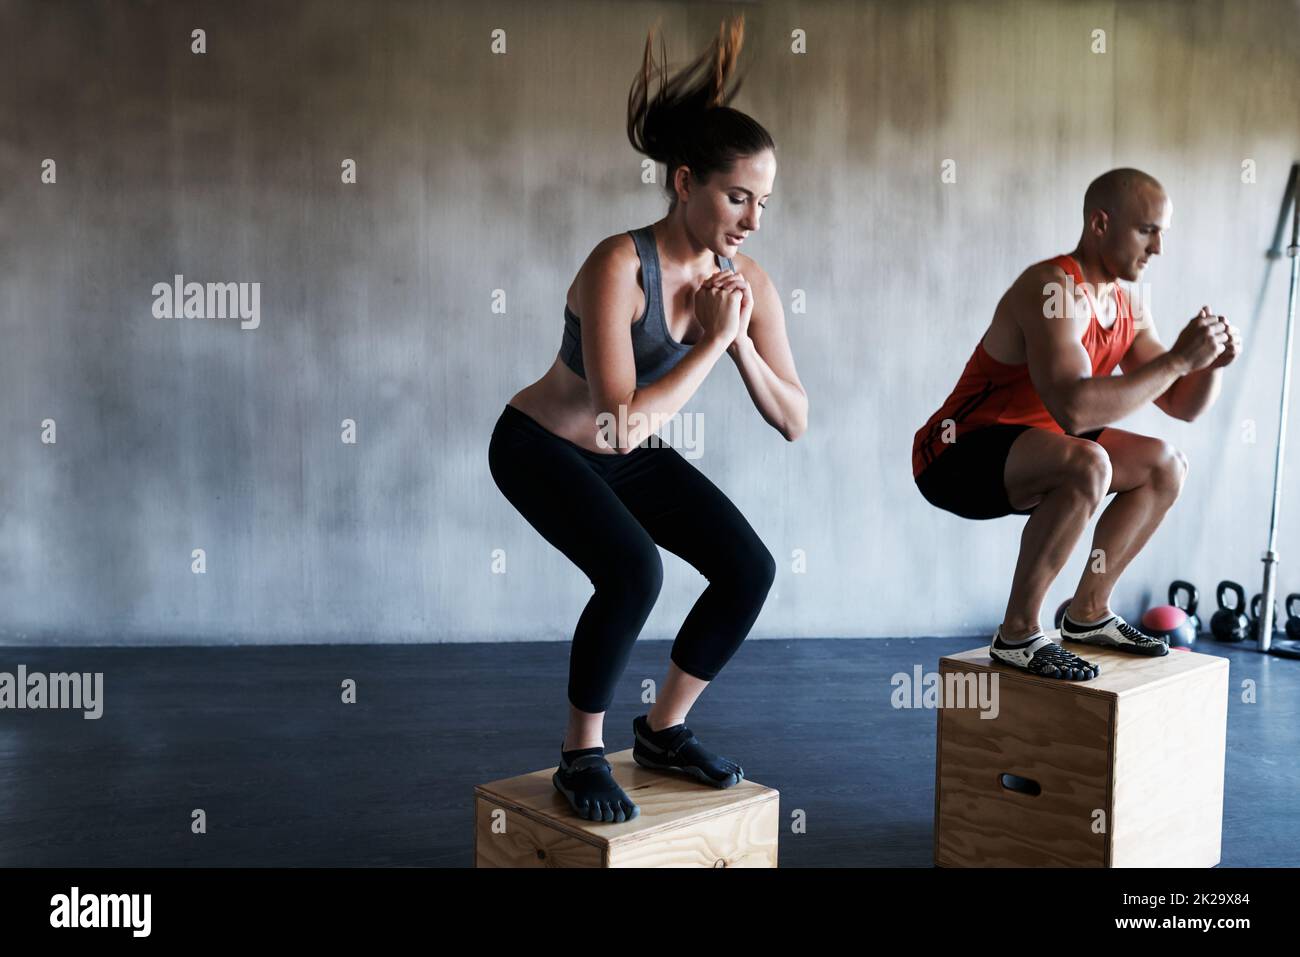 Erreiche den Bestien-Modus. Aufnahme eines Mannes und einer Frau, die gemeinsam im Fitnessstudio trainieren. Stockfoto